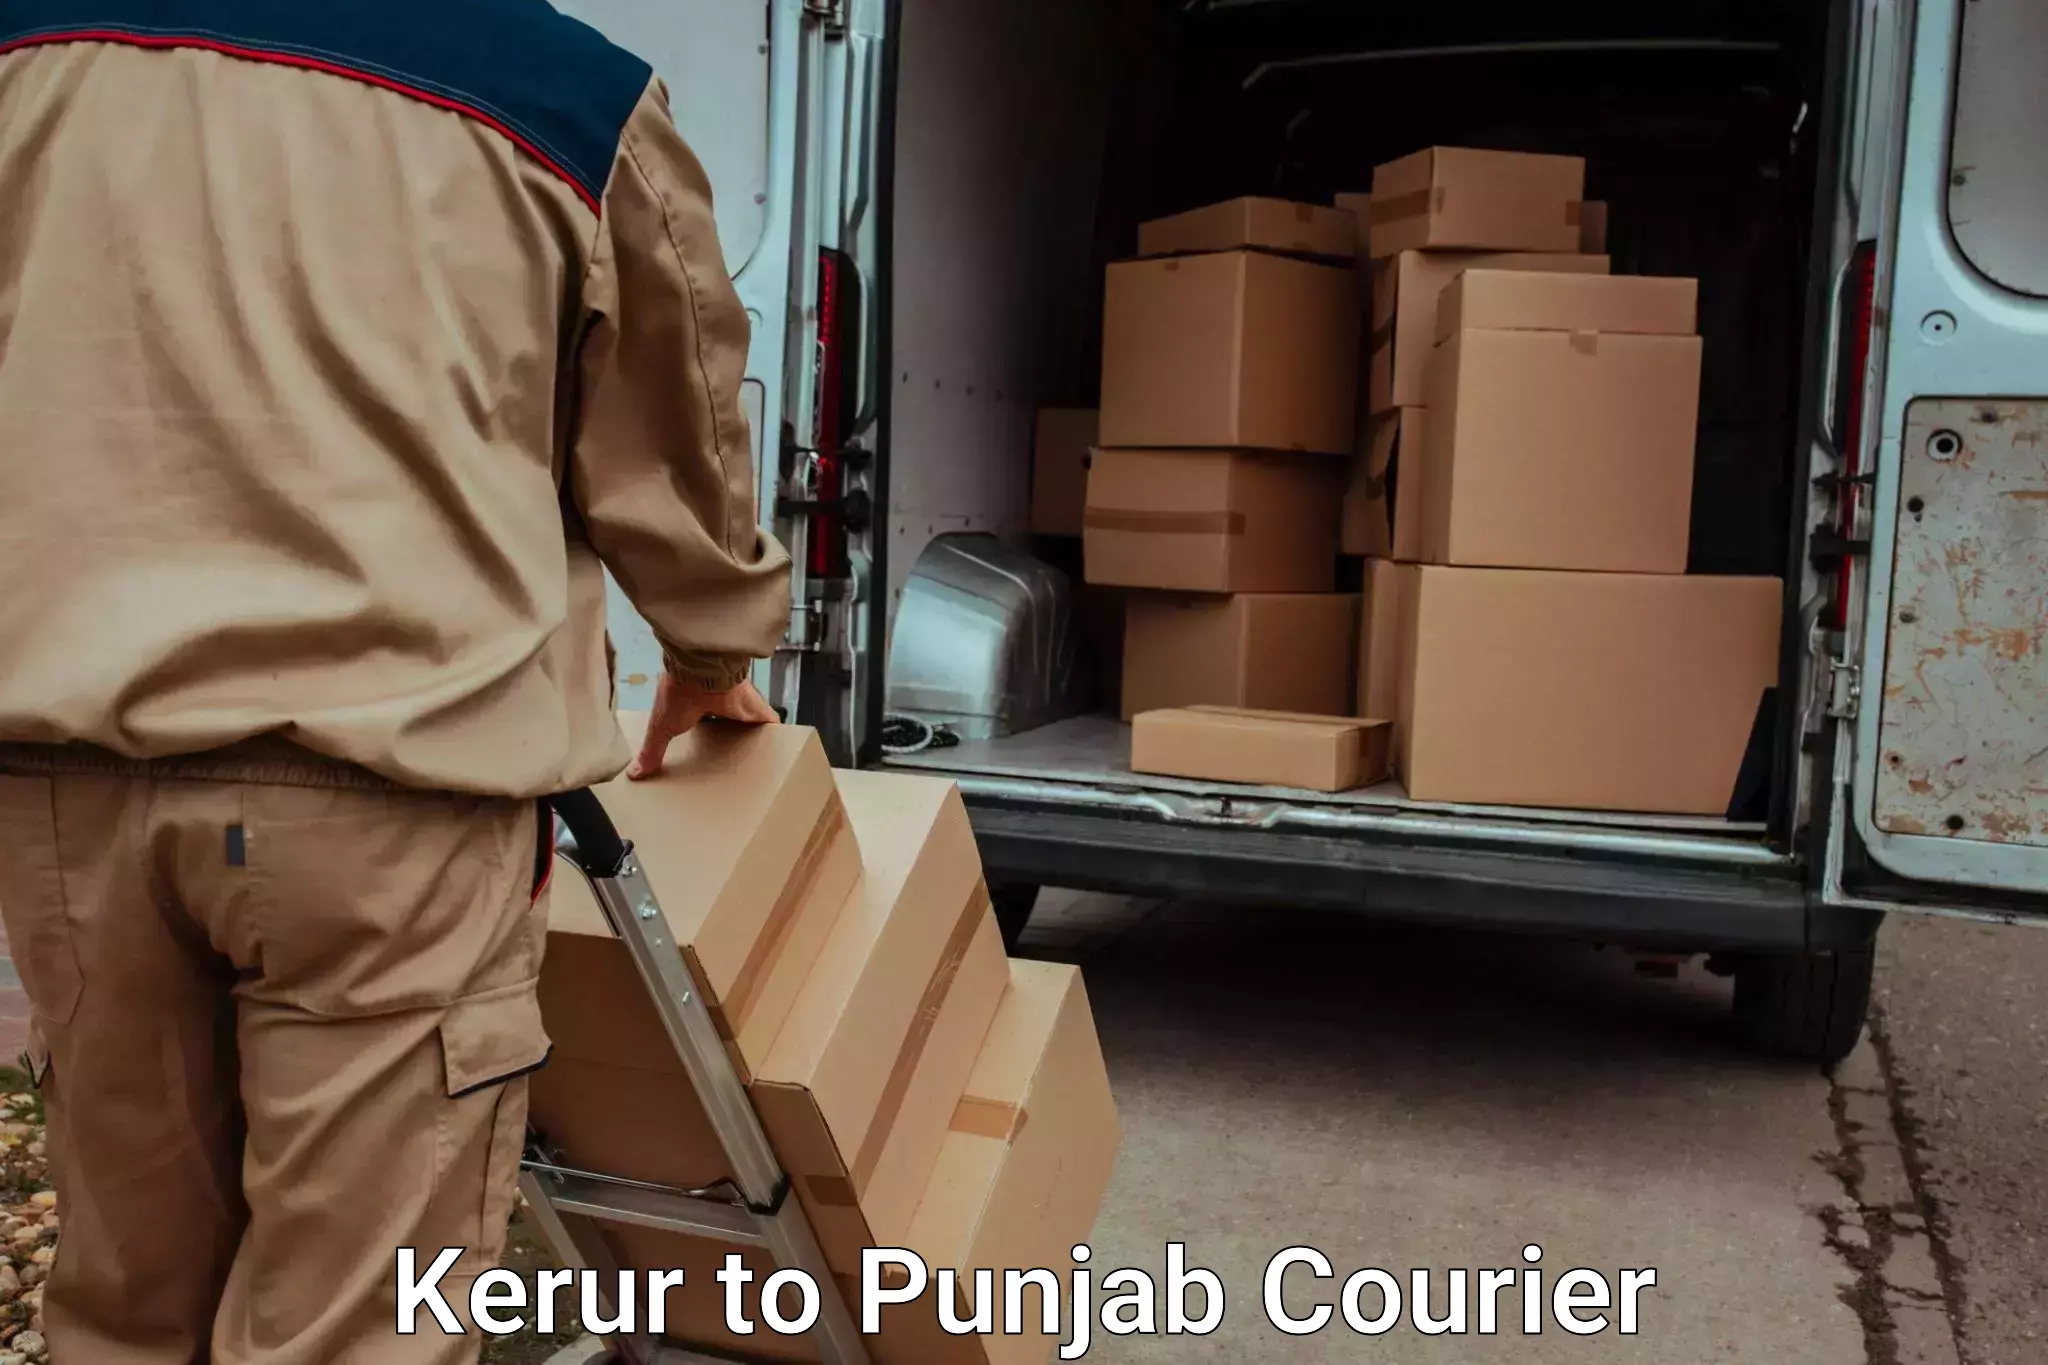 Baggage transport professionals in Kerur to Punjab